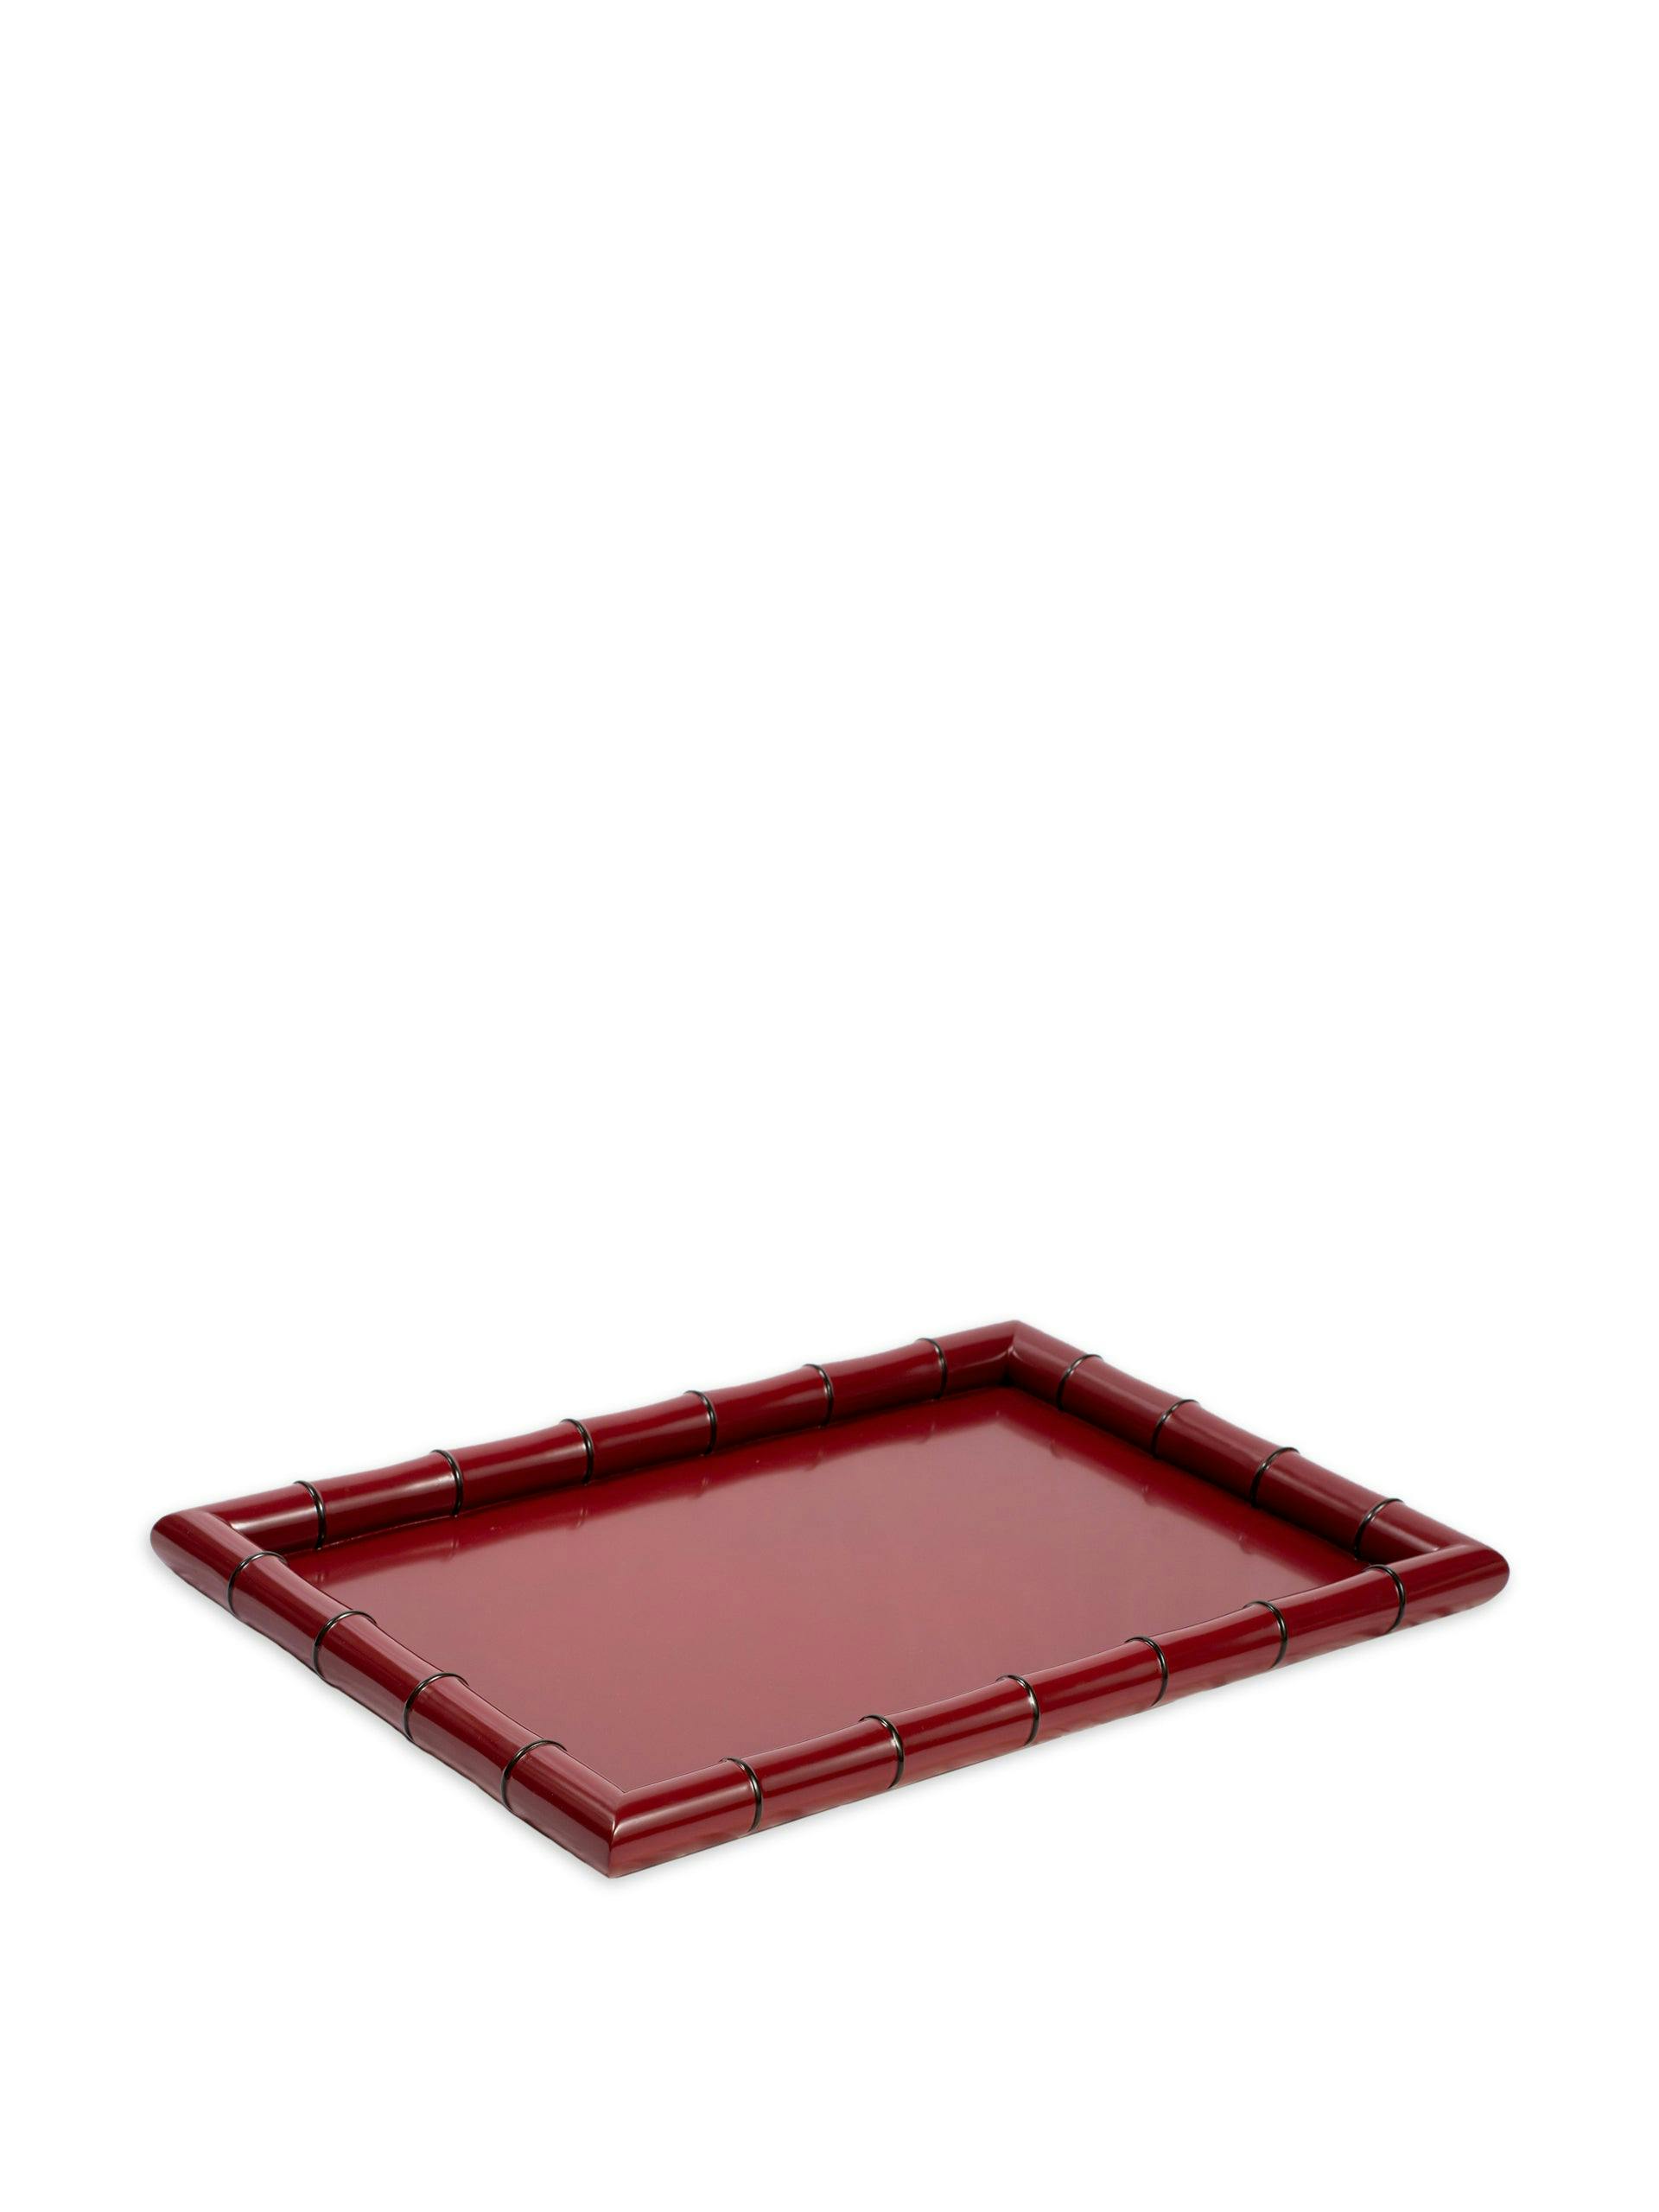 Large ruby cane tray